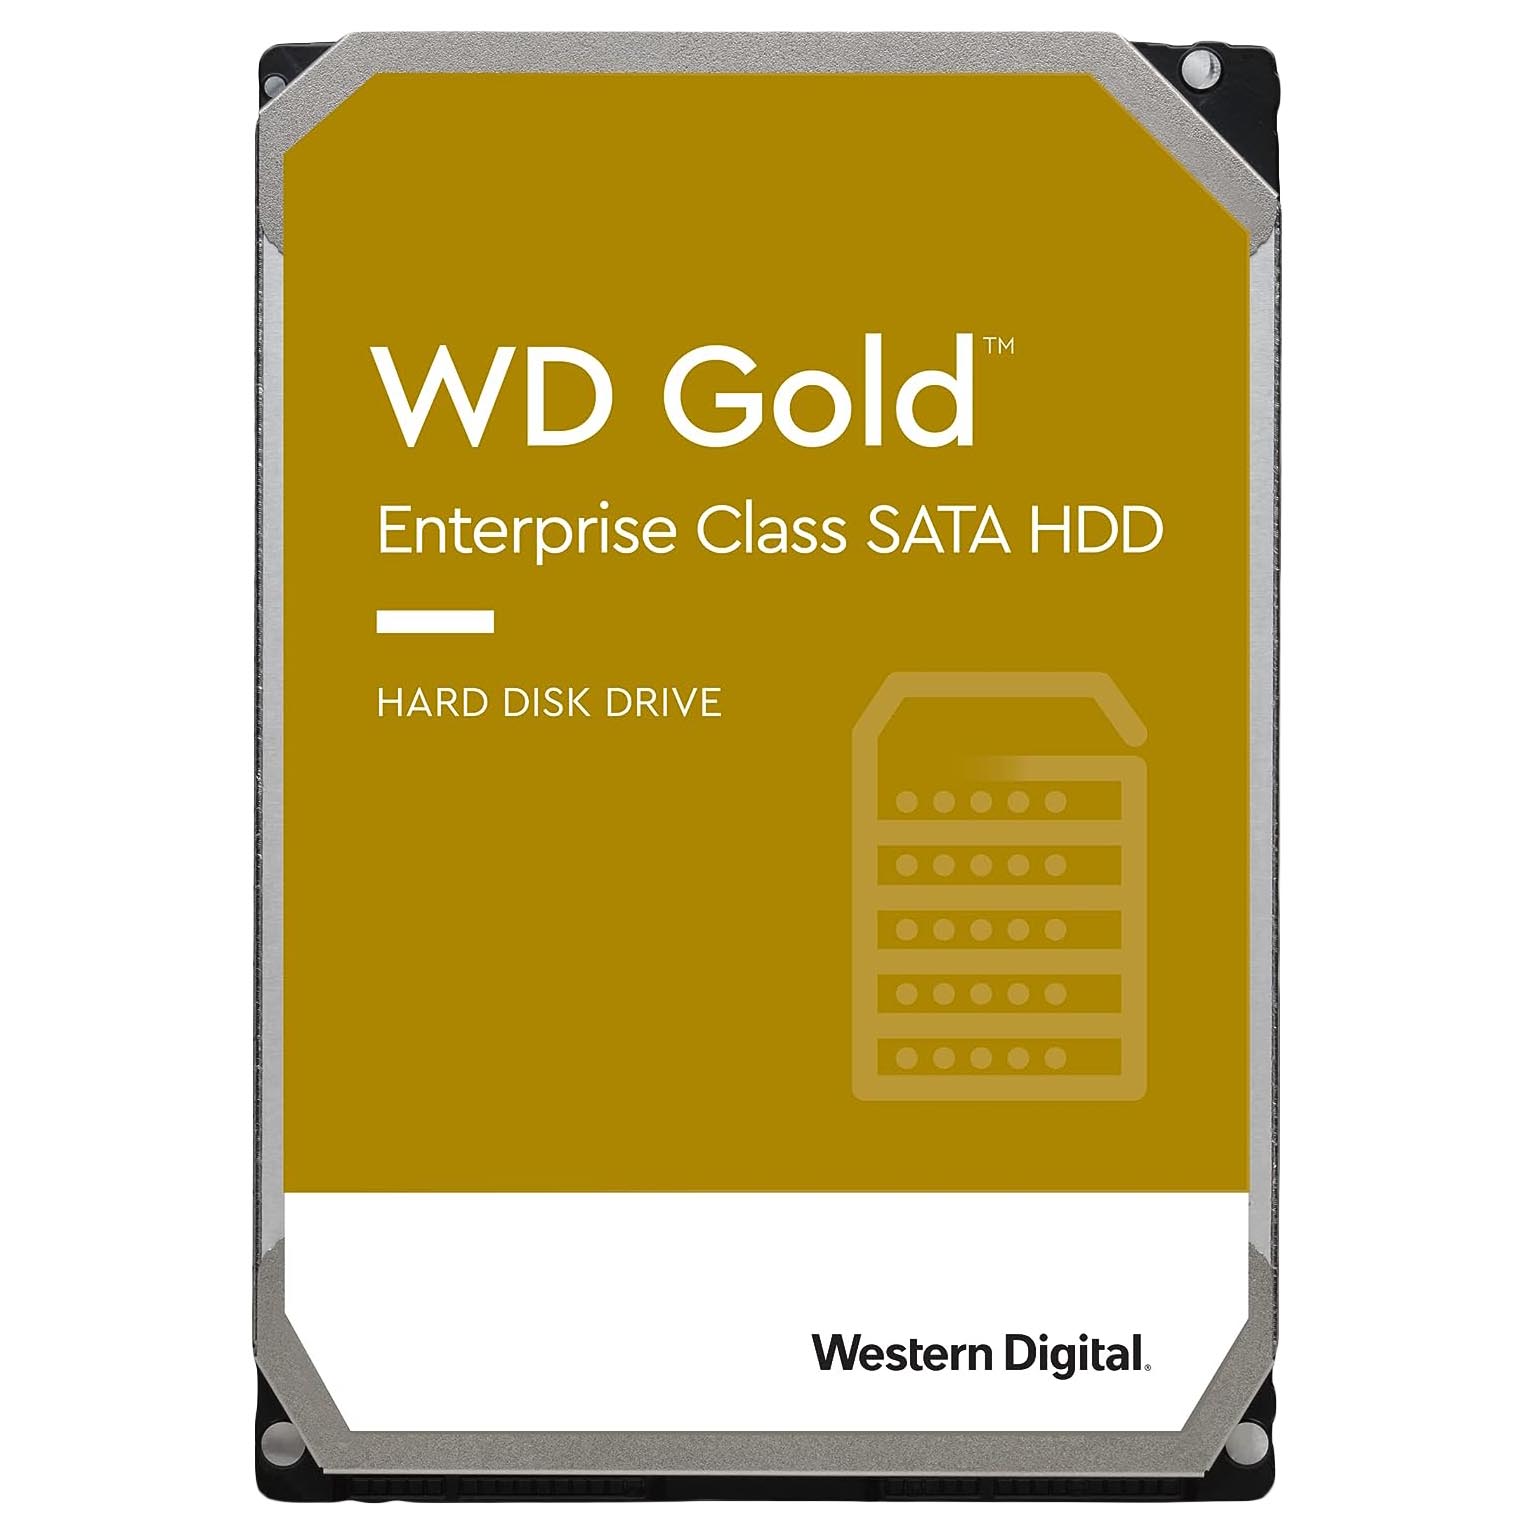 Внутренний жесткий диск Western Digital WD Gold Enterprise Class, WD181VRYZ, 18Тб внутренний жесткий диск western digital wd red pro nas wd181kfgx 18тб